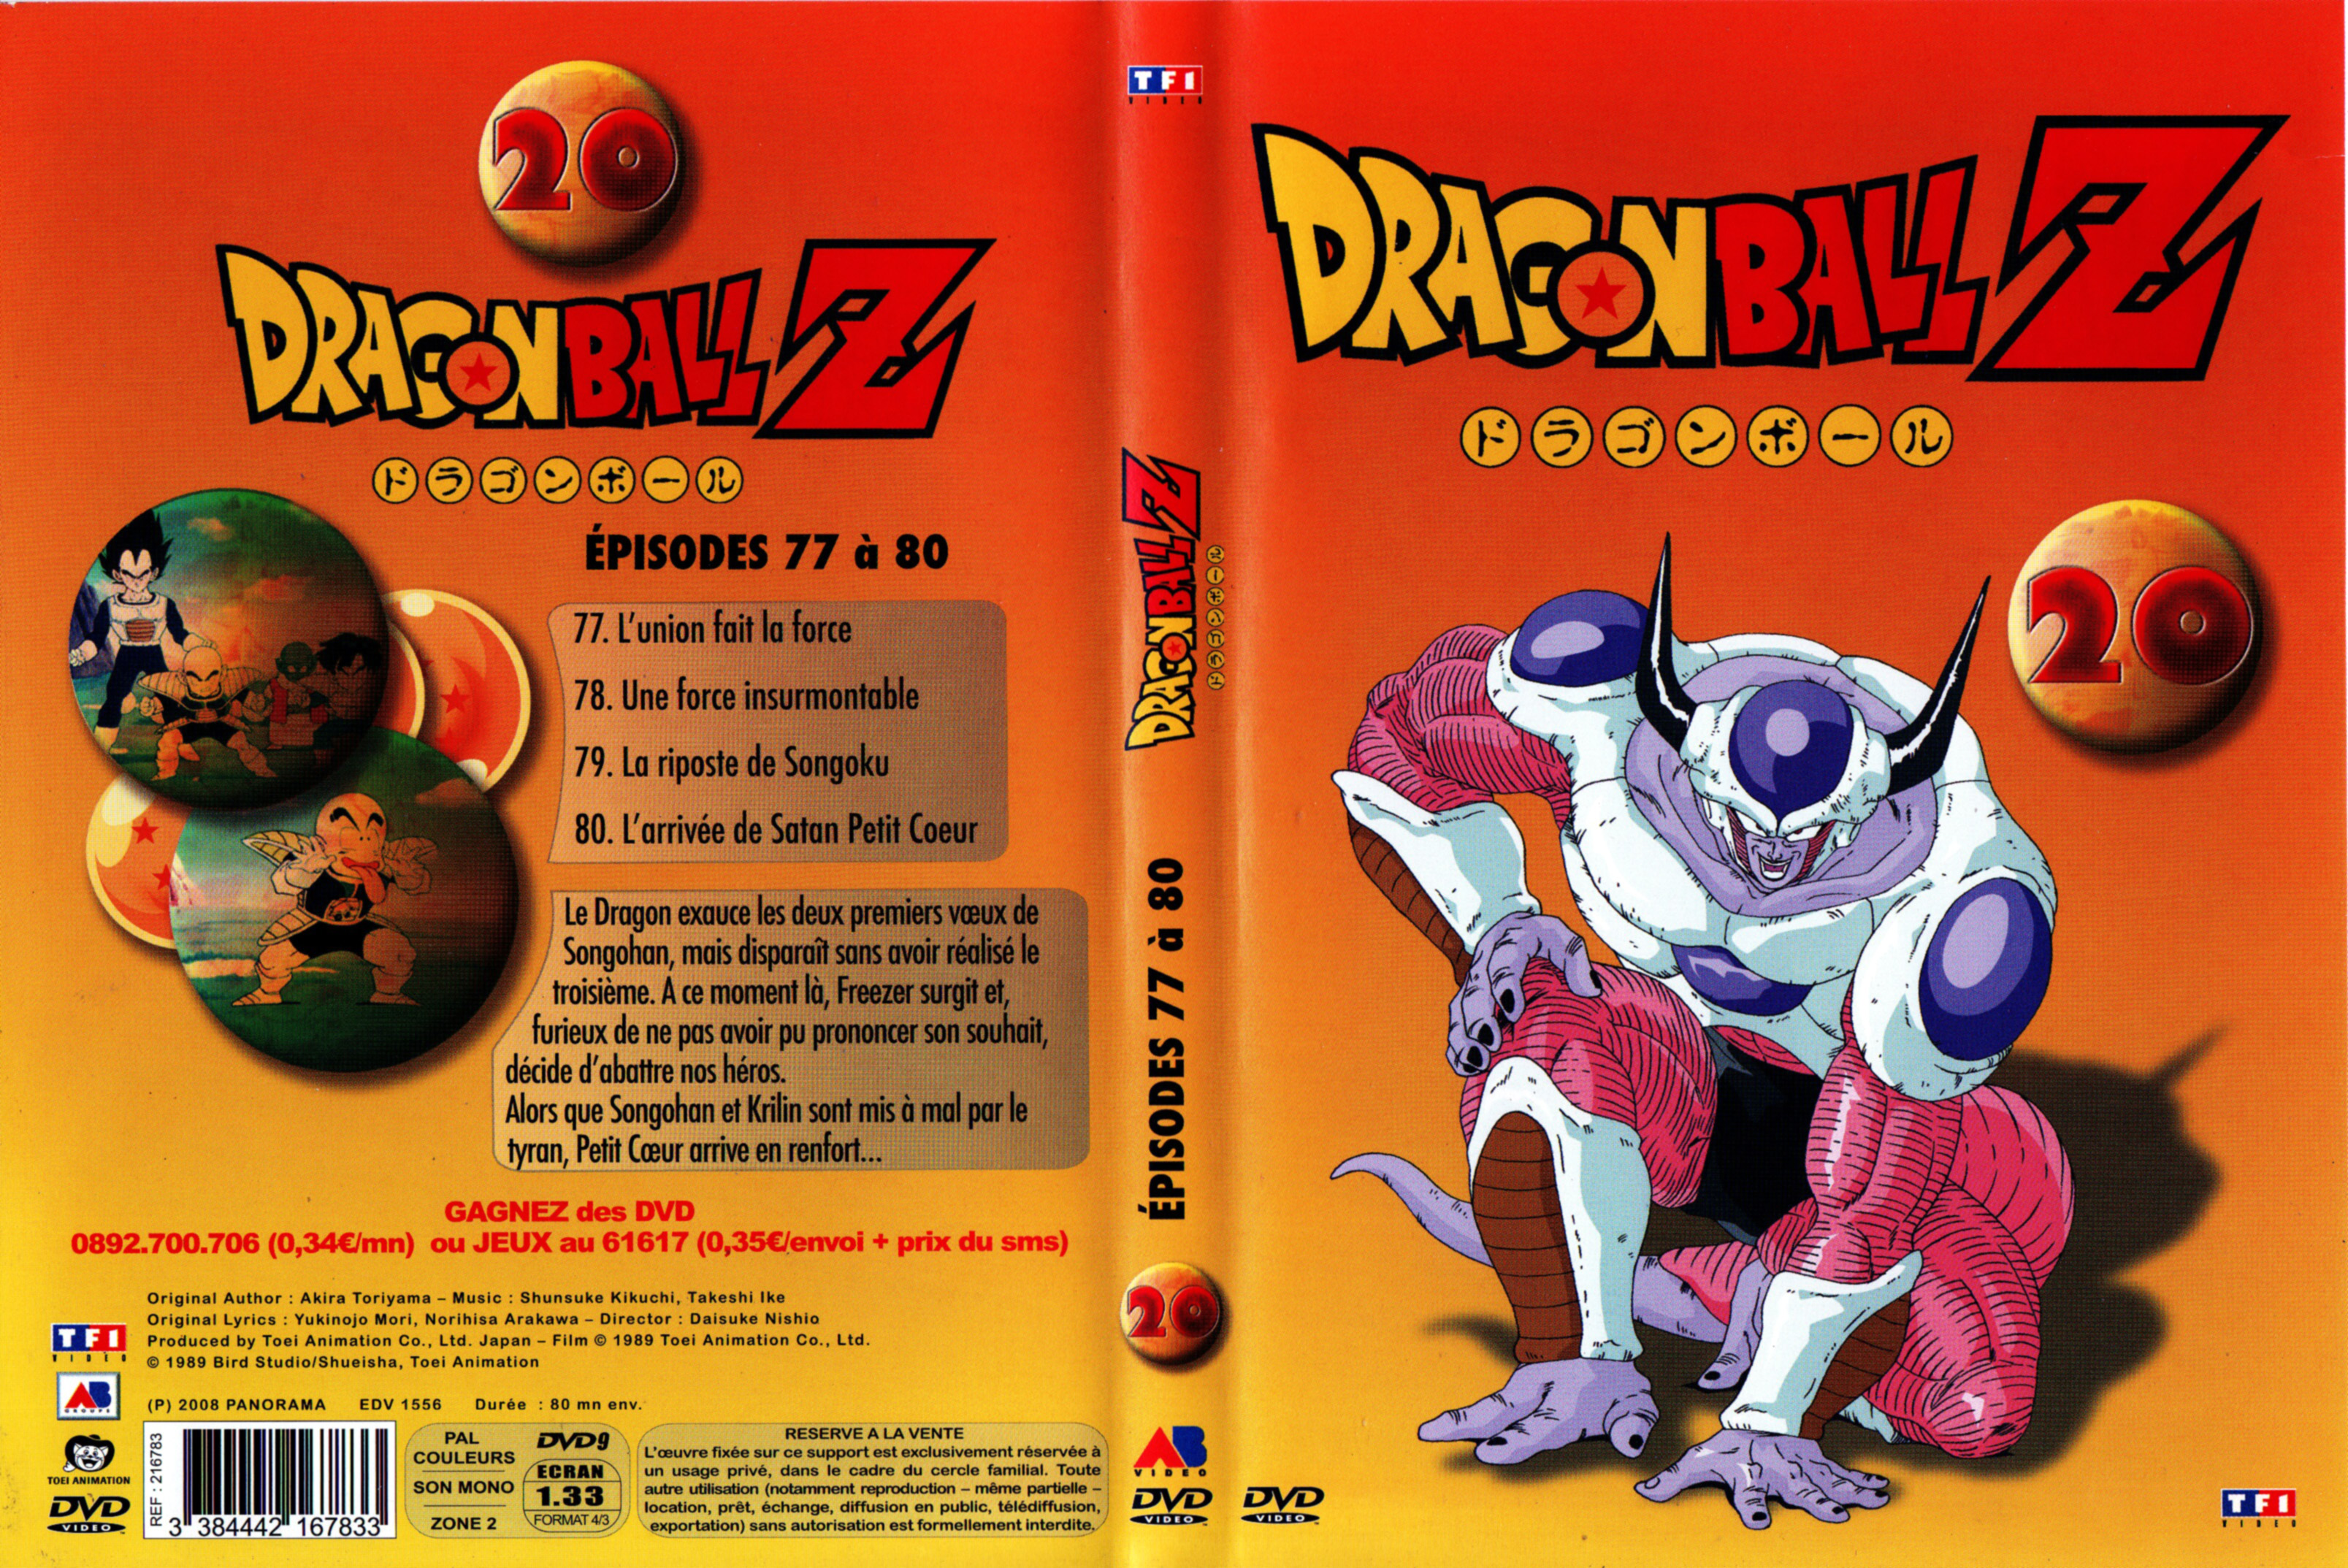 Jaquette DVD Dragon ball Z vol 20 v4